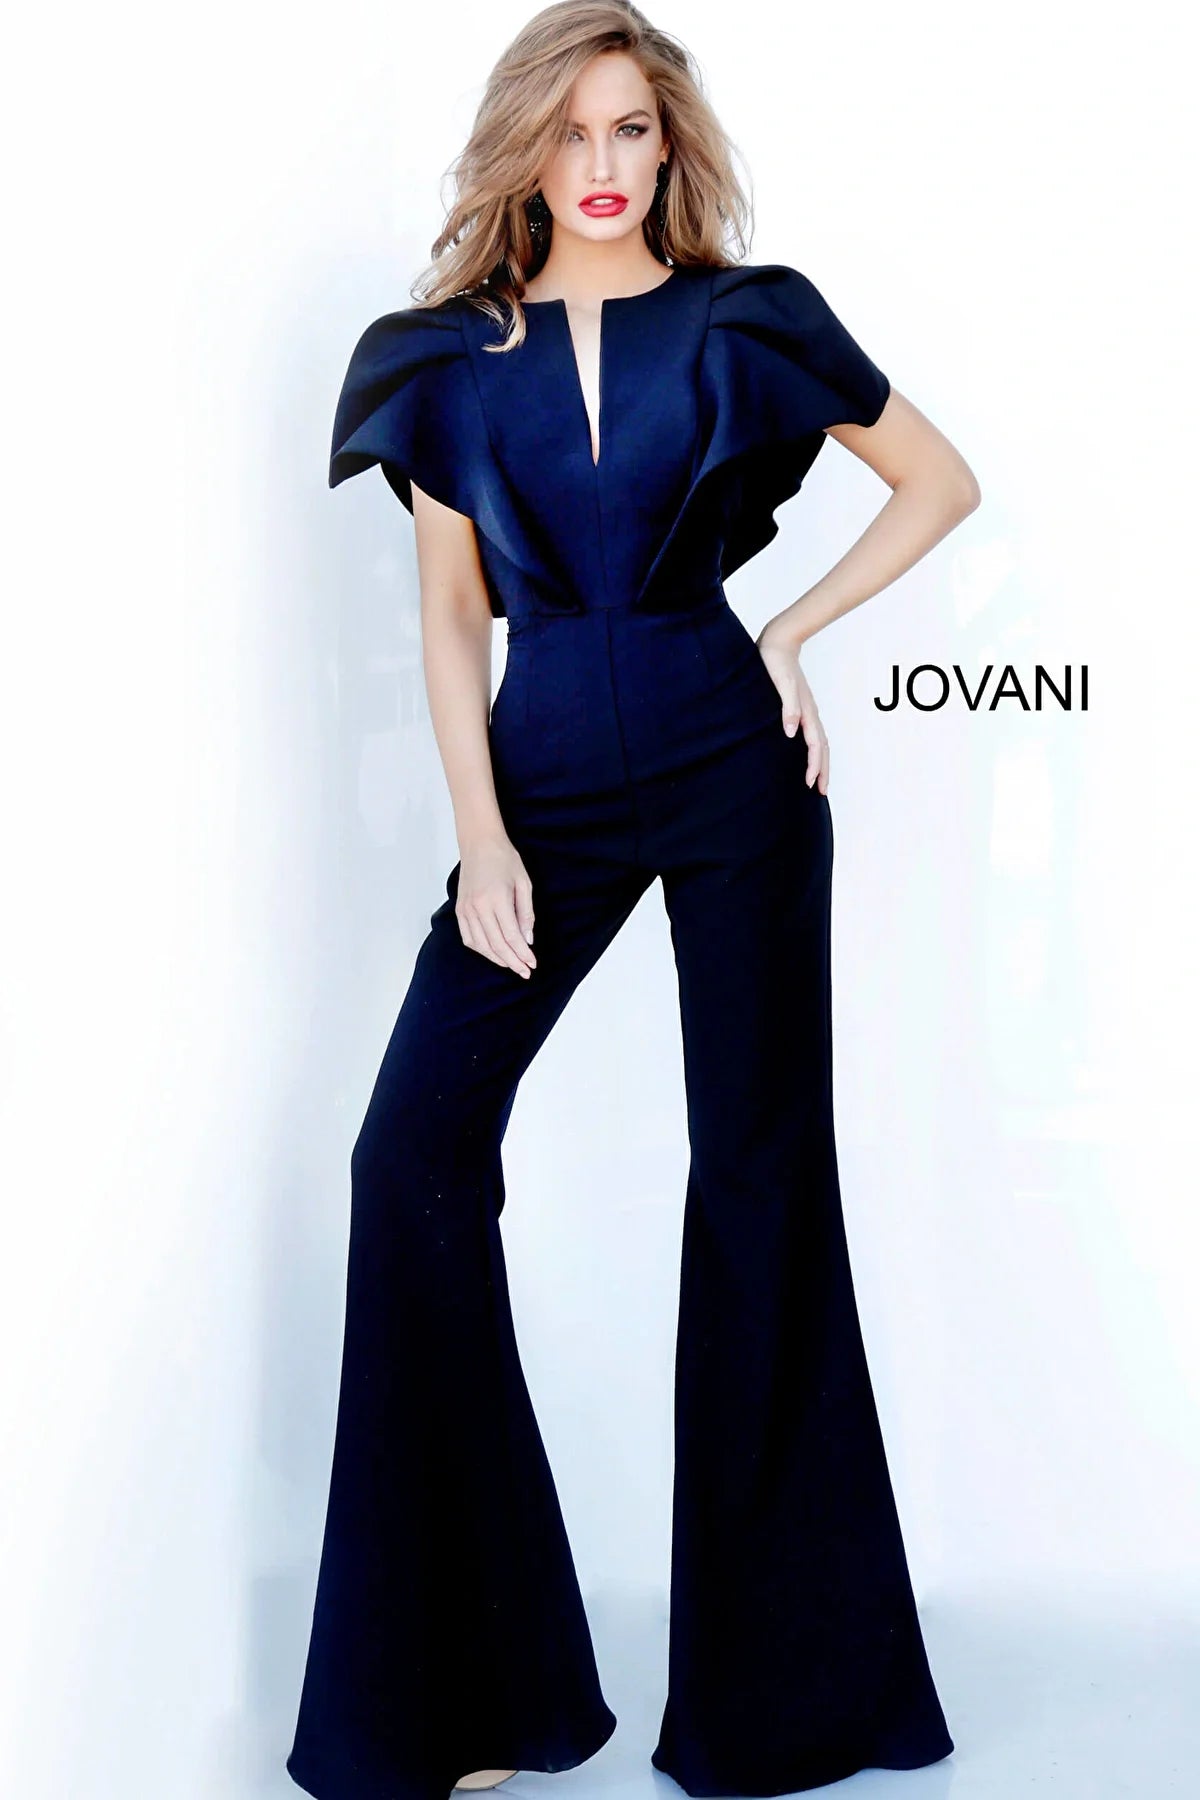 Jovani 00762 Black Short Sleeve Jovani Jumpsuit